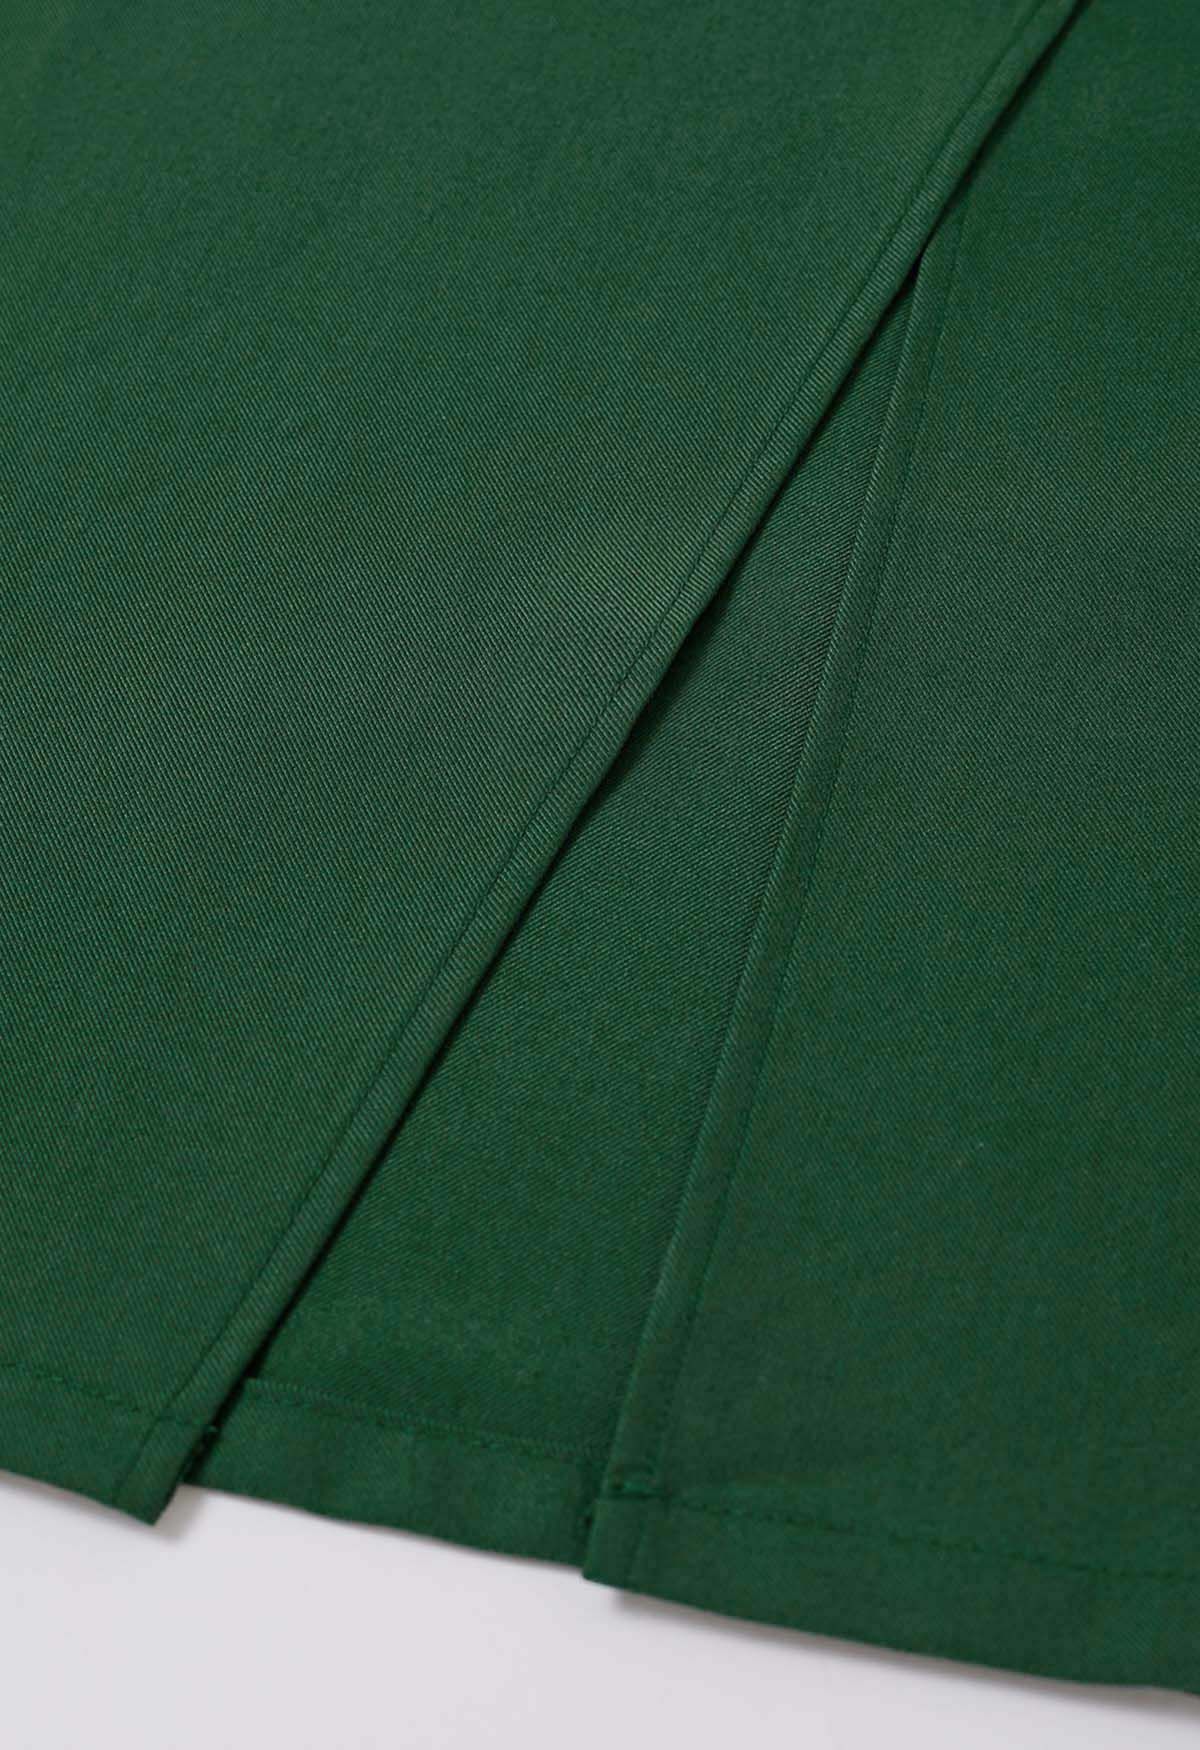 Falda con abertura delantera y bolsillo ribeteado en verde